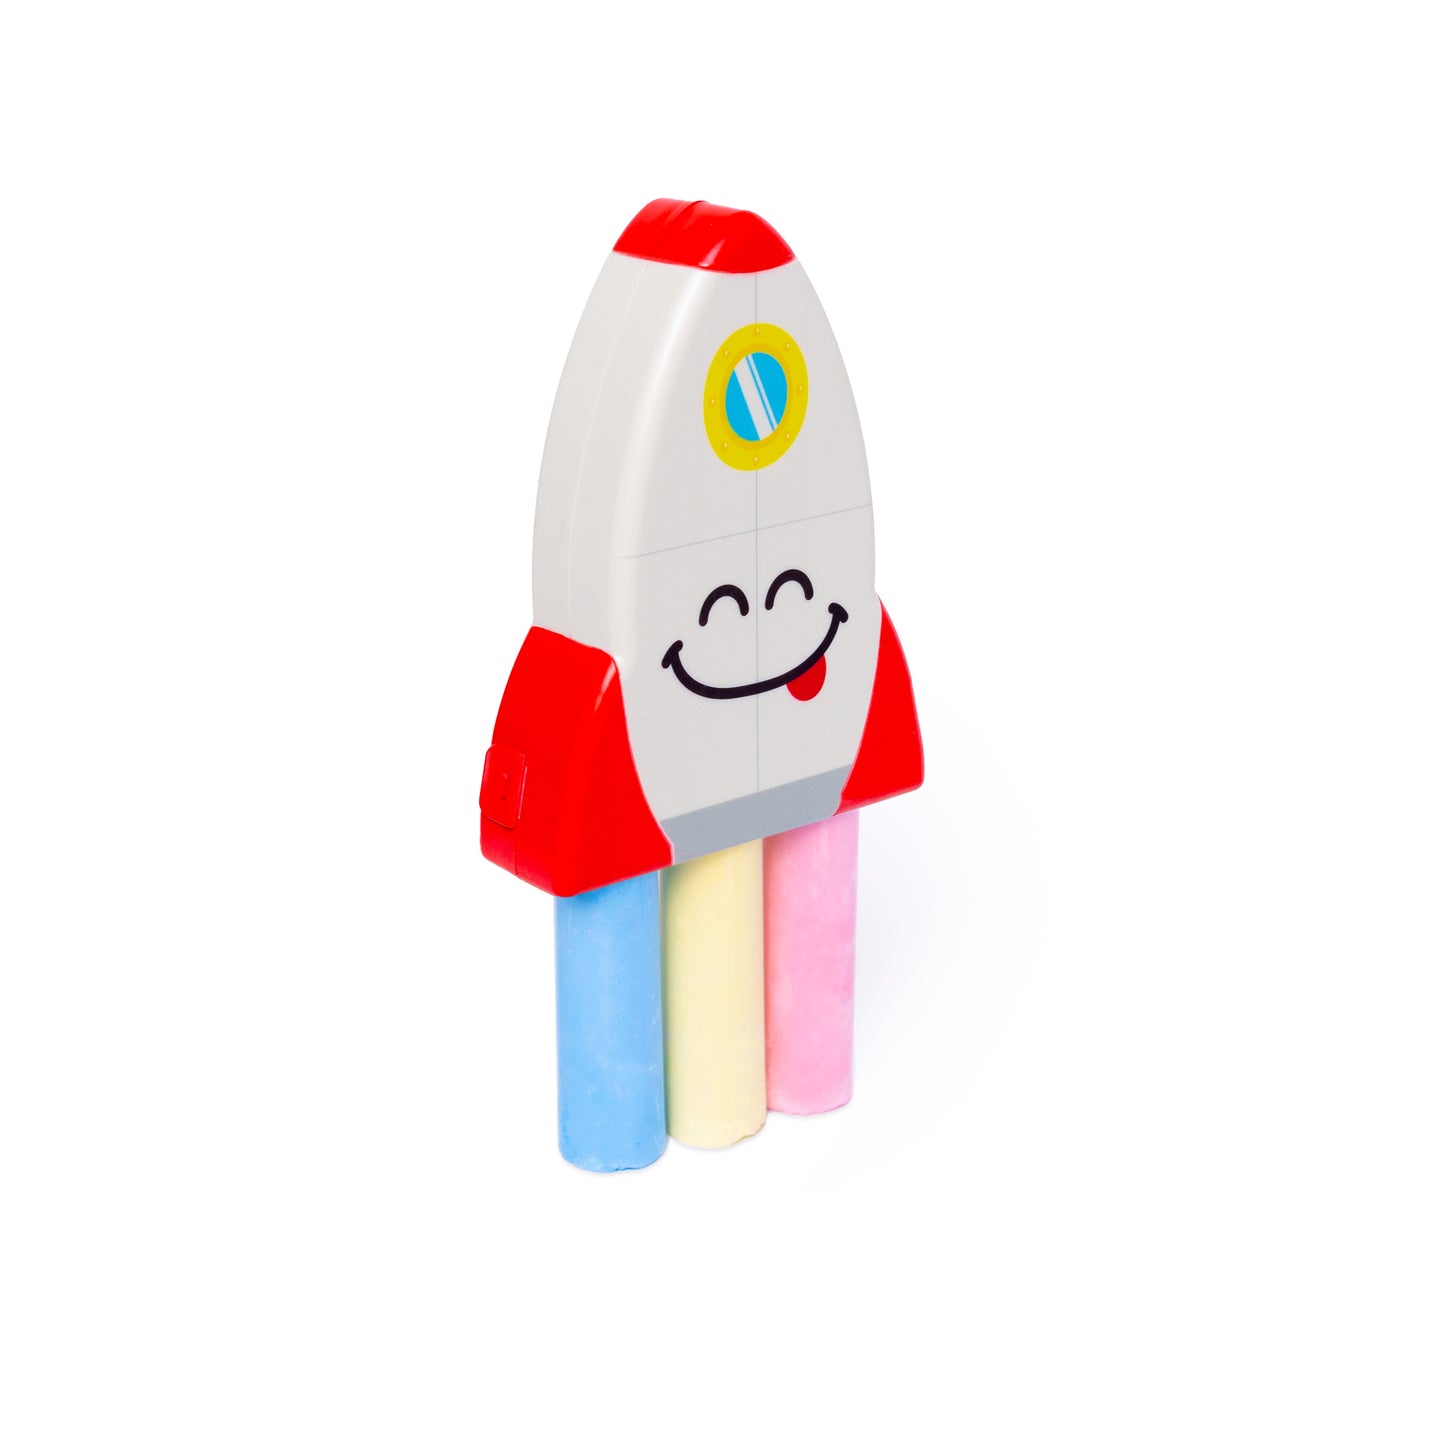 Rocketship Chalk Toy